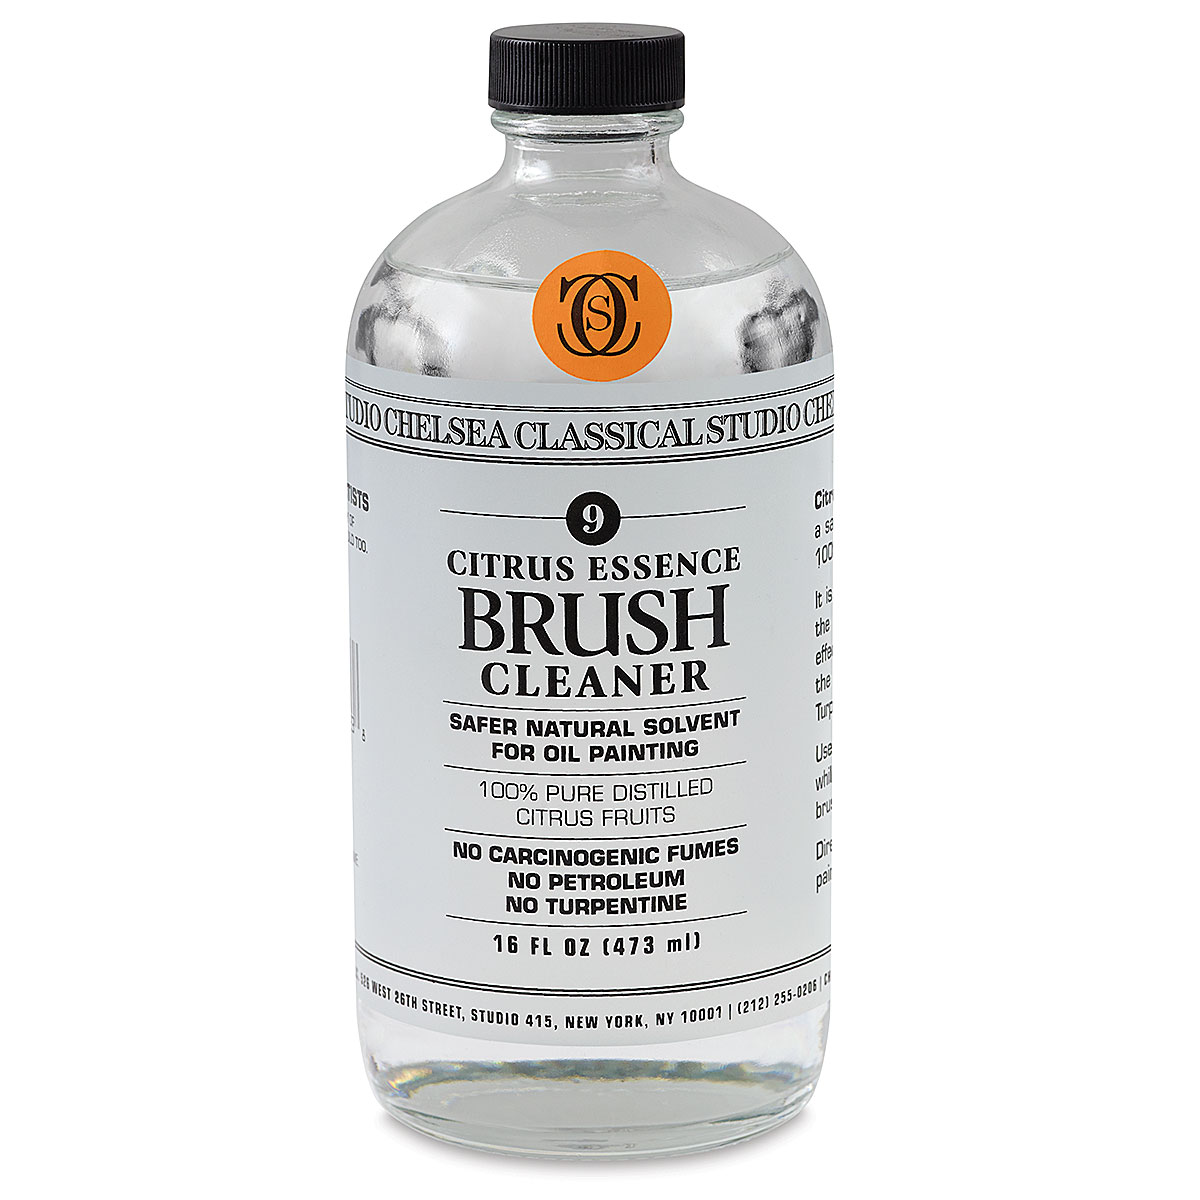 Chelsea Classical Studio : Citrus Essence Brush Cleaner : 4oz